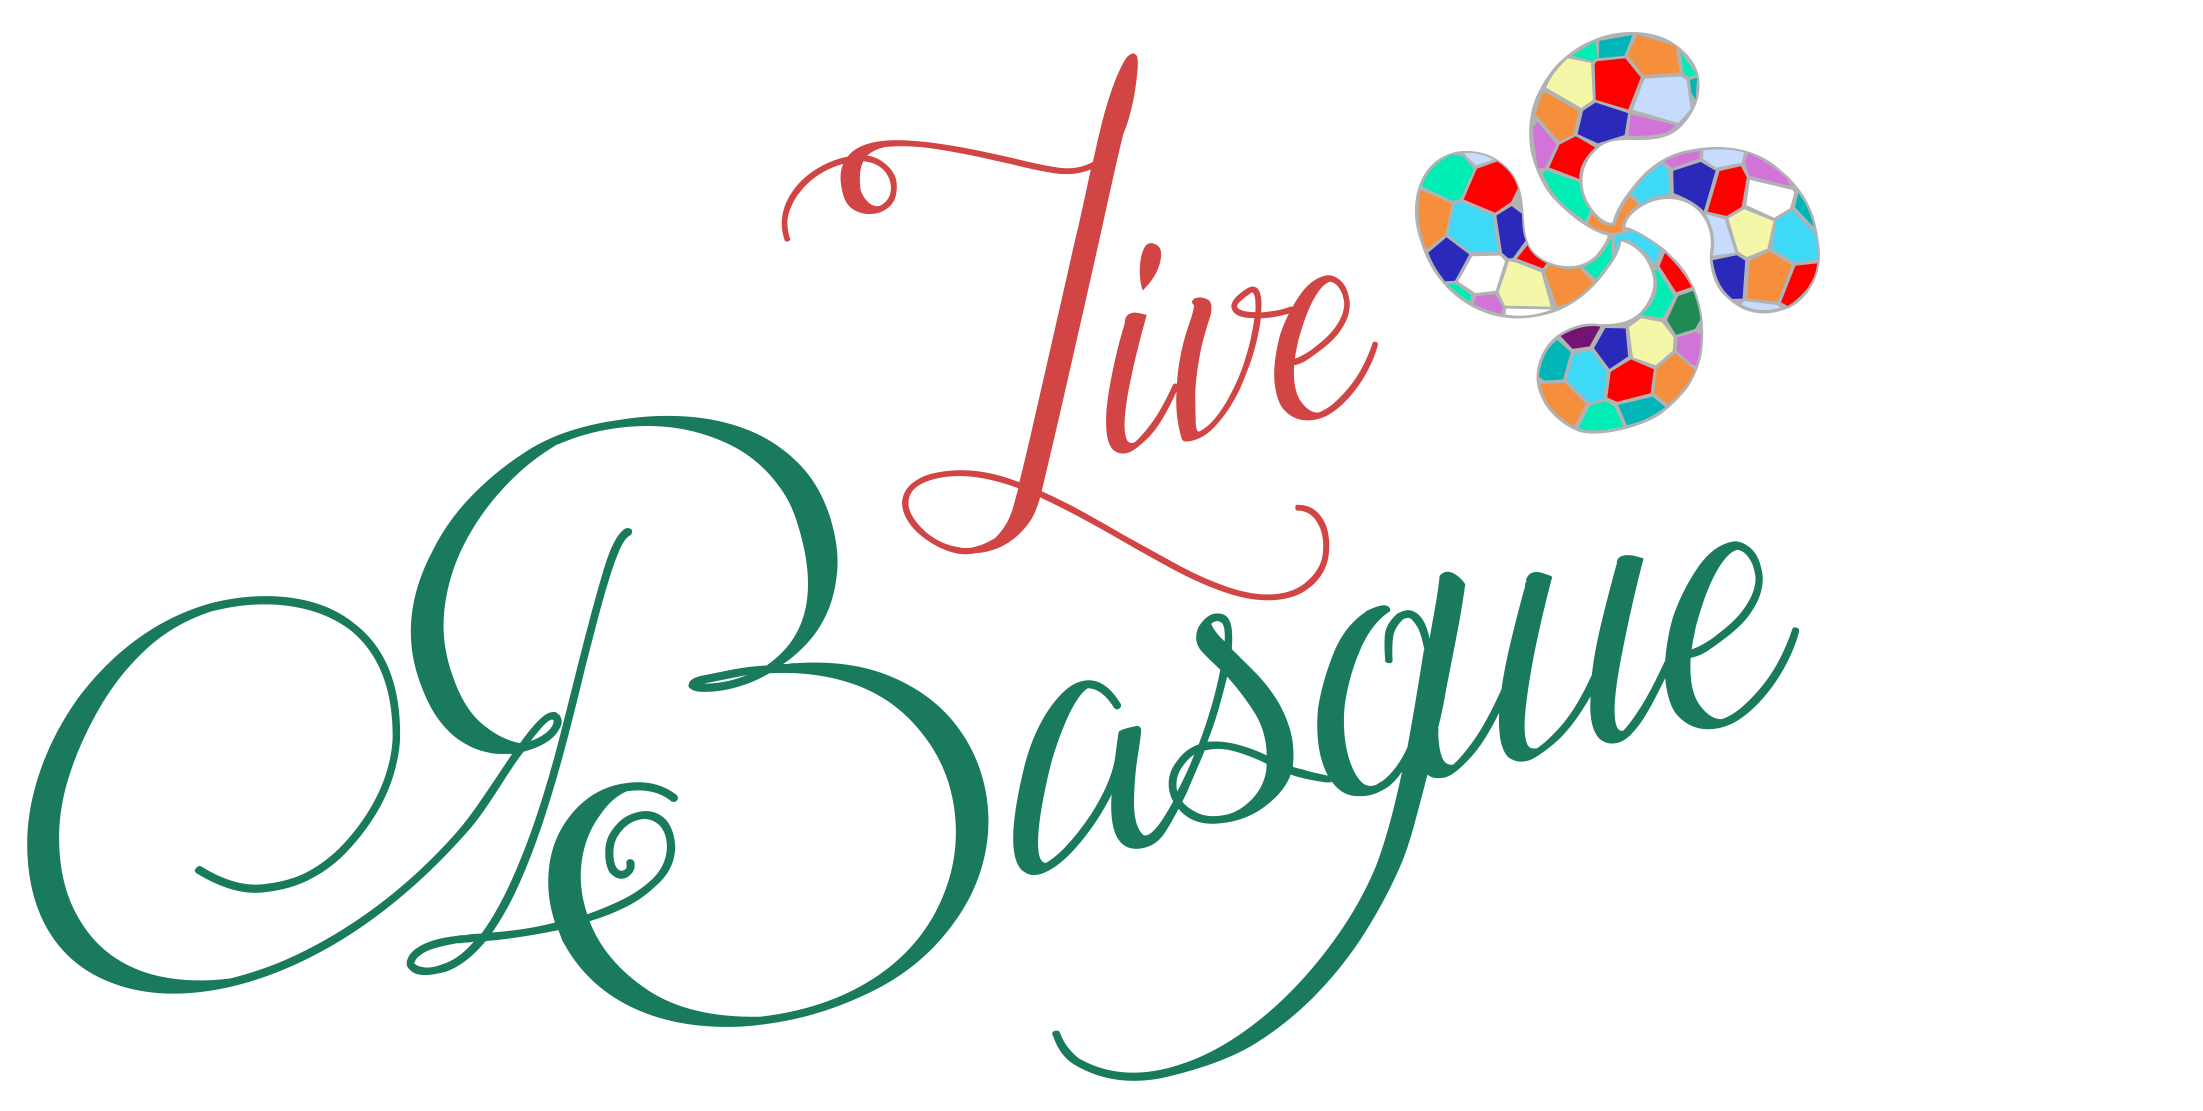 Basque Live